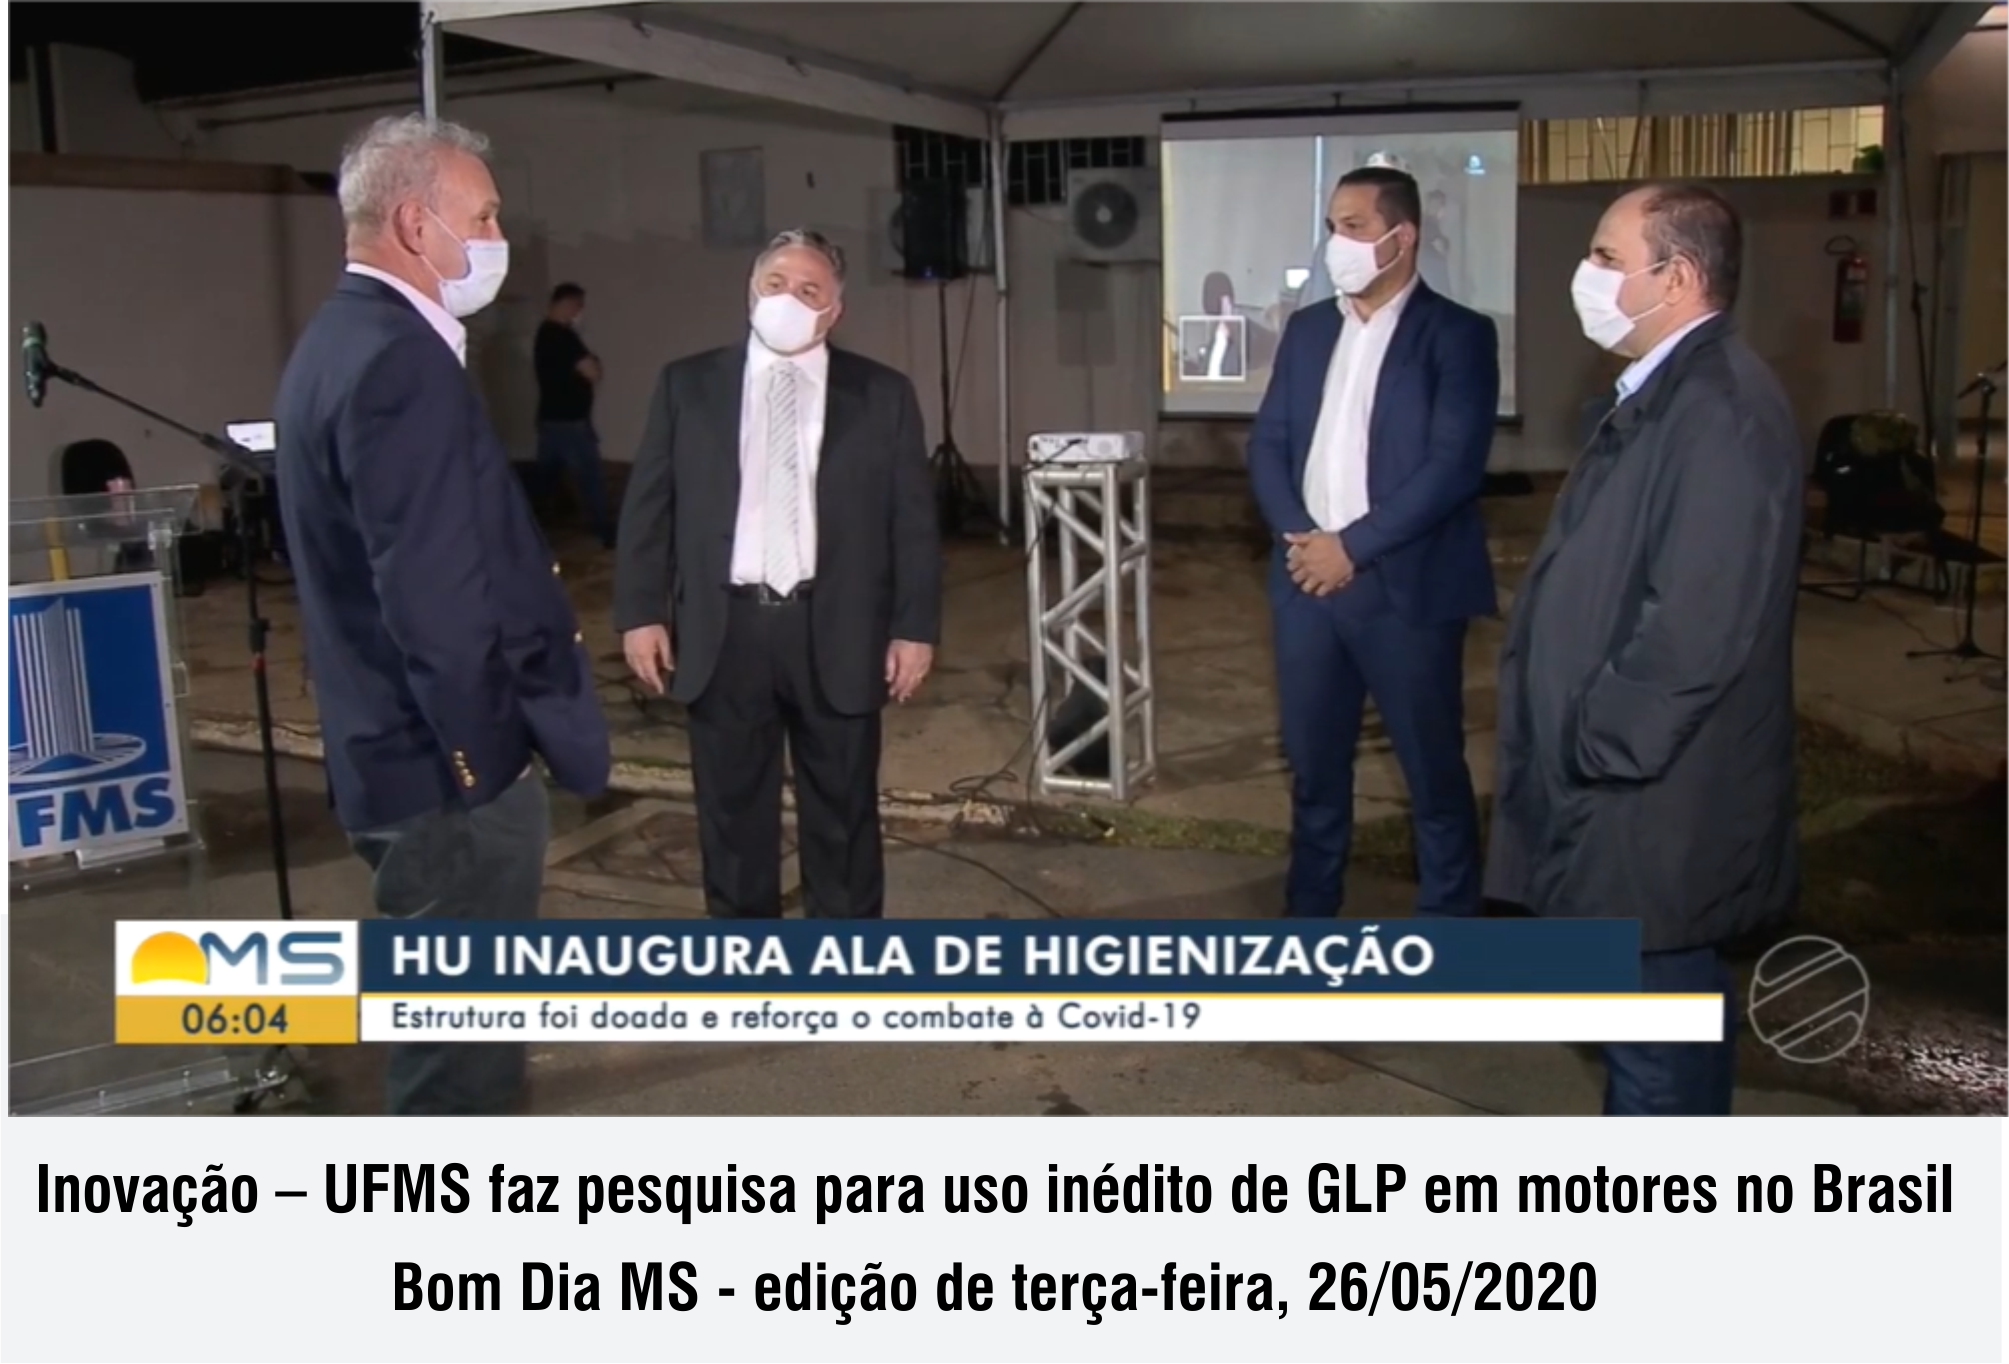 MSTV - Inovação – UFMS faz pesquisa para uso inédito de GLP em motores no Brasil